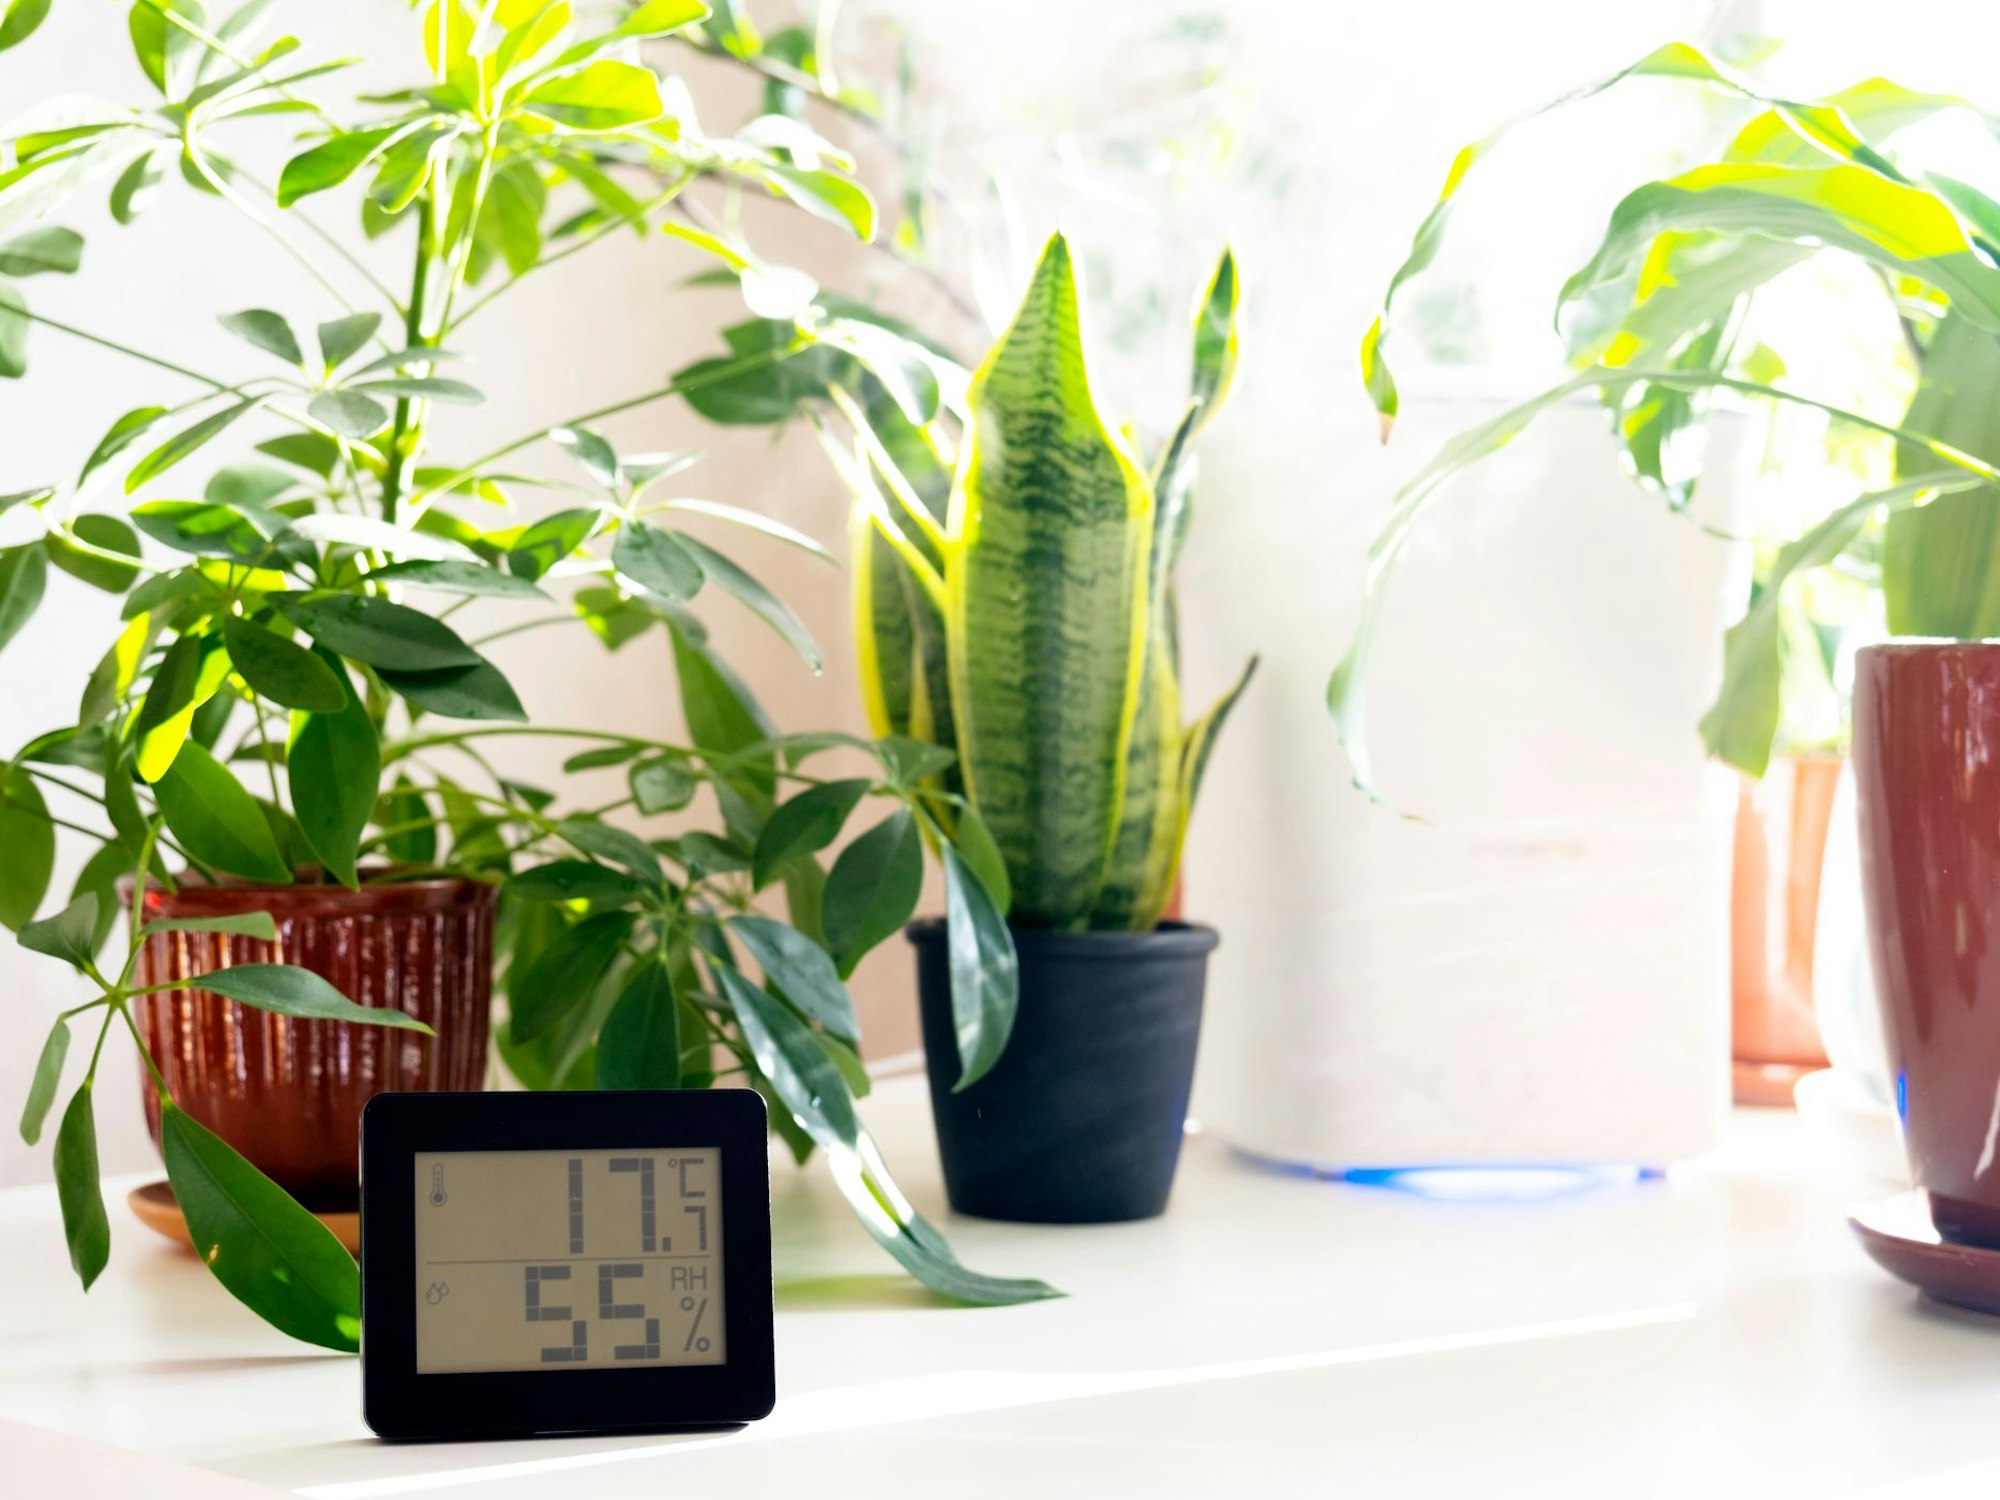 Luftfeuchtigkeit erhöhen geht anz einfach mit den richtigen Zimmerpflanzen.